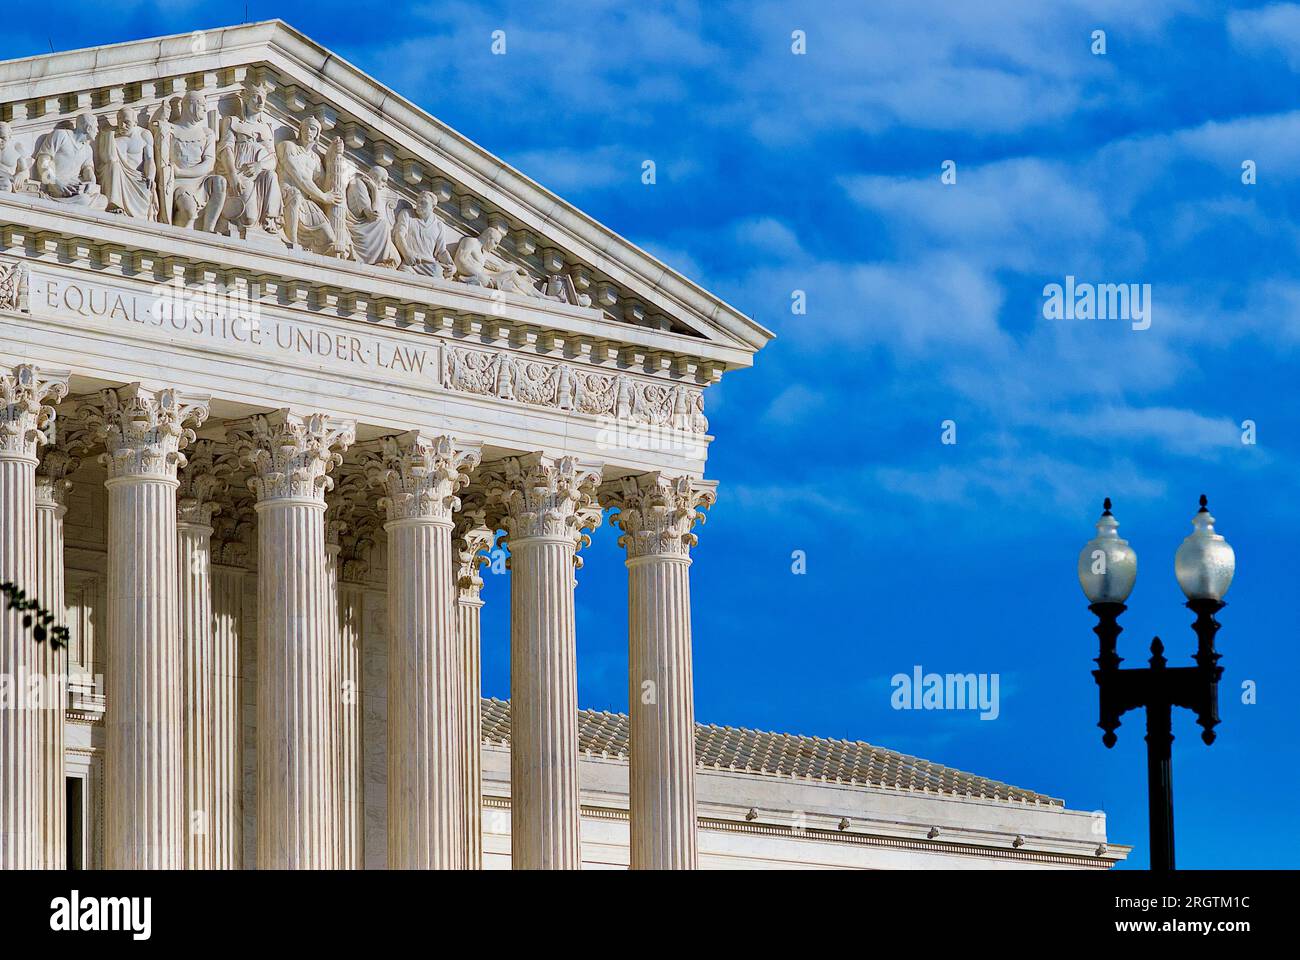 Washington, D.C., États-Unis - 3 novembre 2020 : le soleil du soir baigne le front de la Cour suprême des États-Unis (SCOTUS) par une journée d'automne croustillante. Banque D'Images